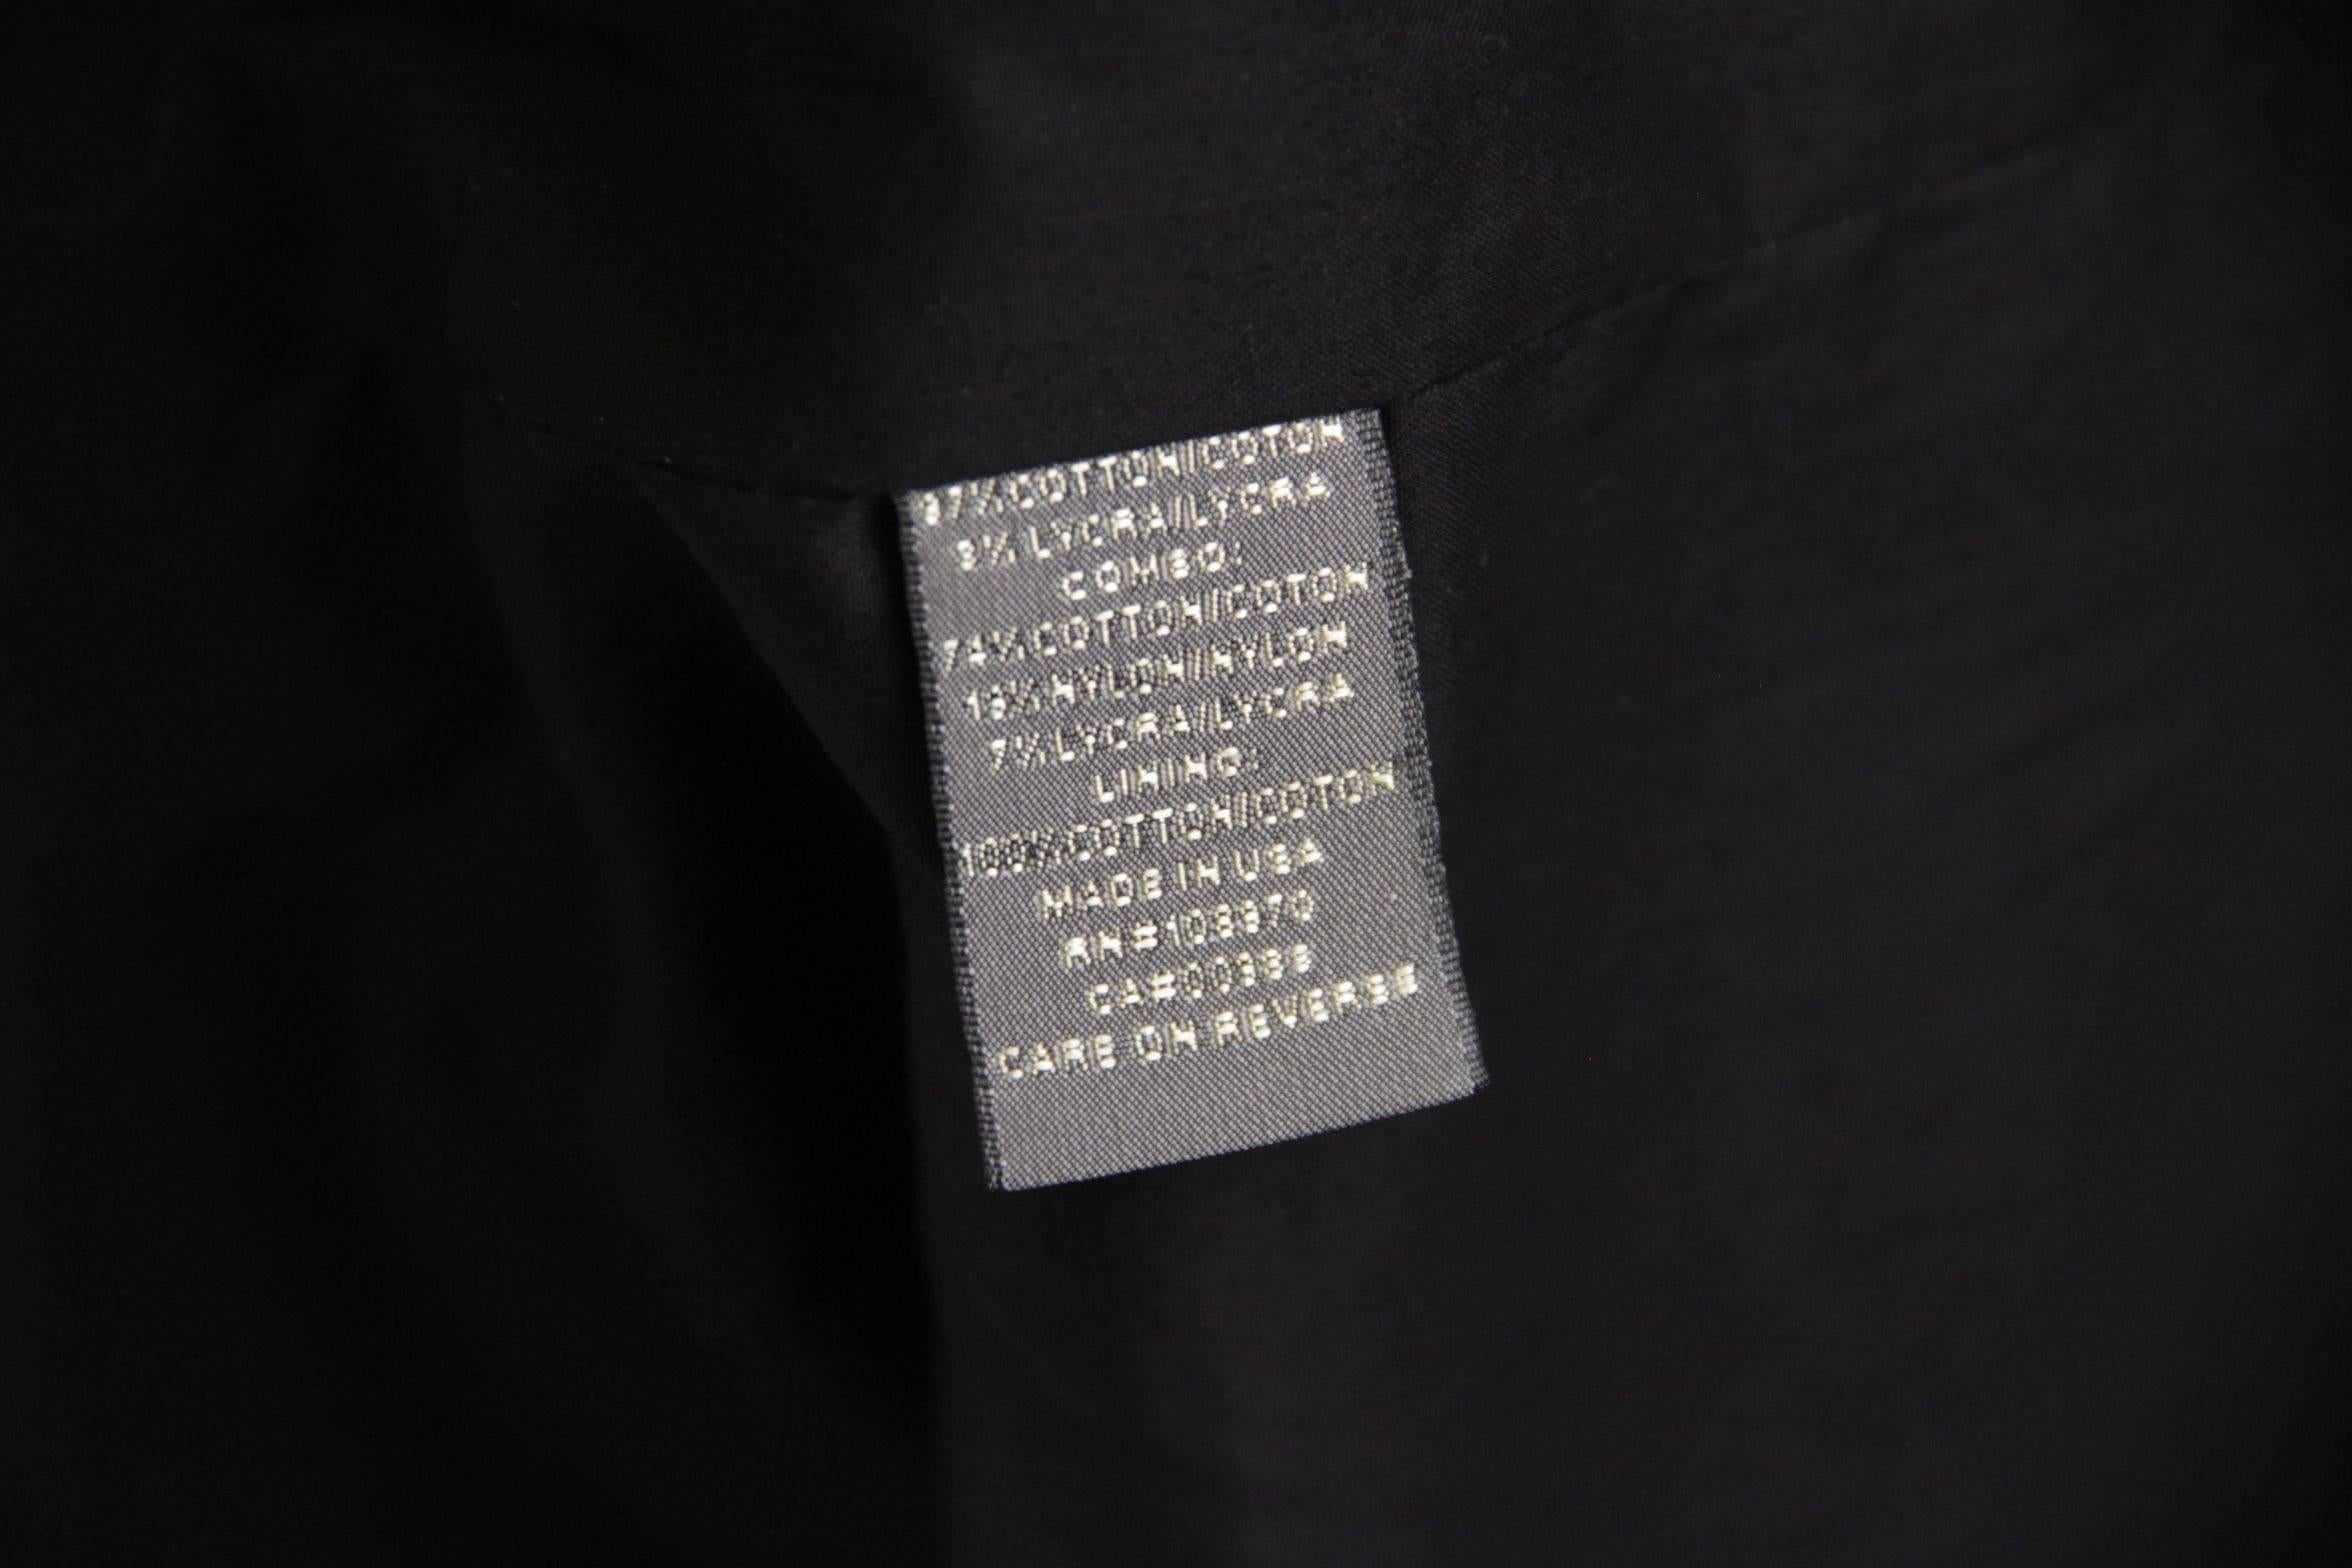  ZAC POSEN Black Cotton Blend PANELLED Sheath DRESS Size 4  2